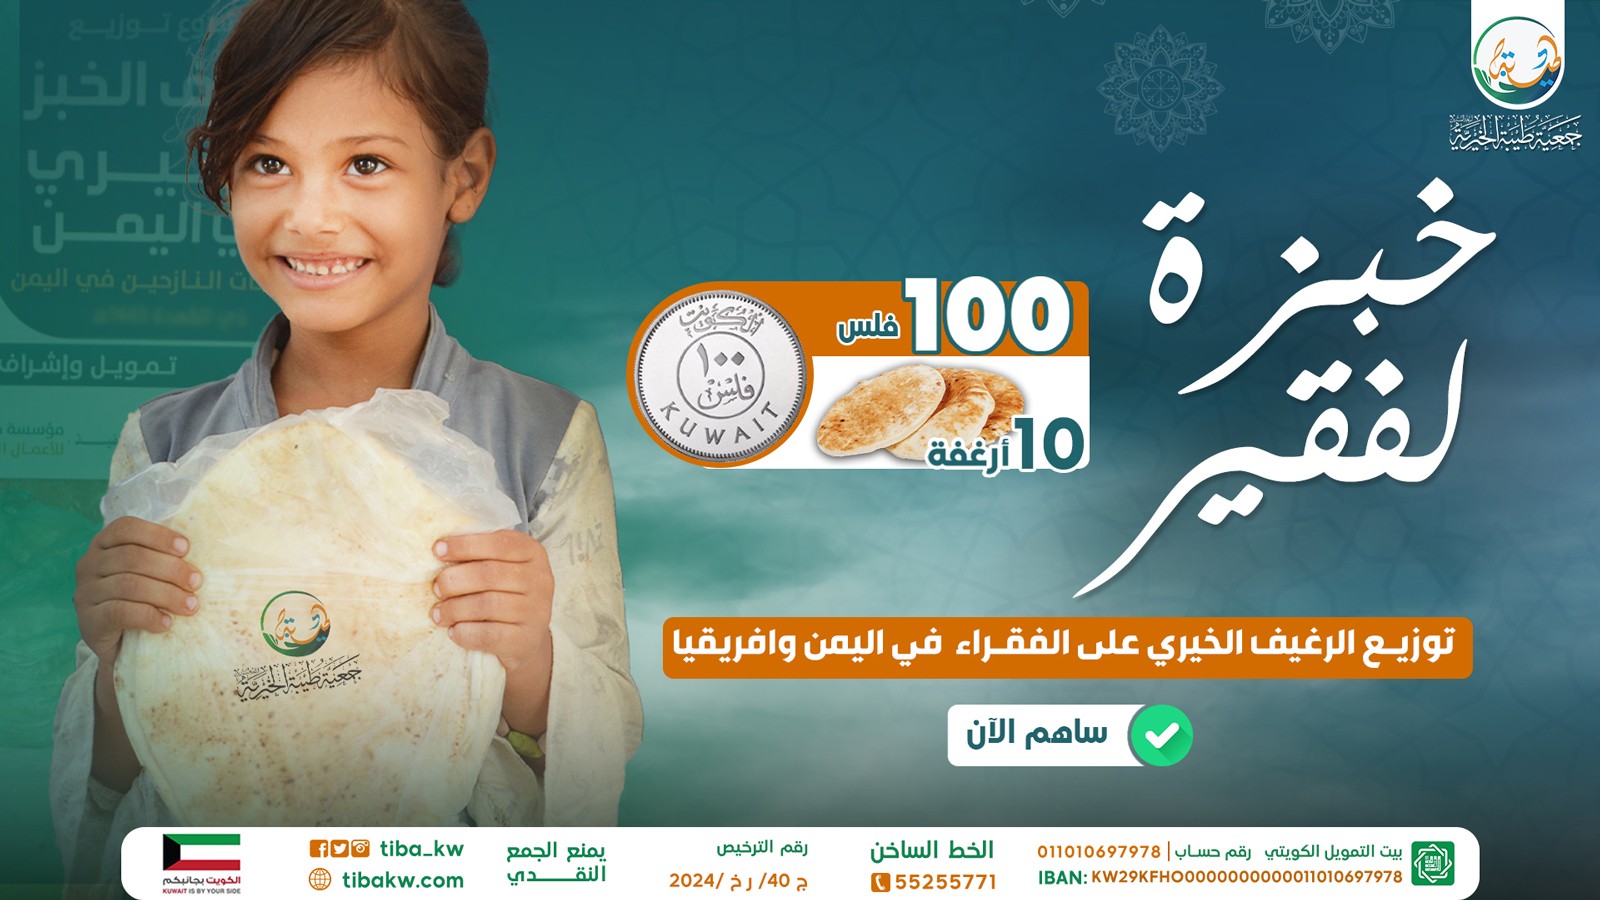 مشروع (أطعمني خبزة)  لفقراء اليمن وأفريقيا